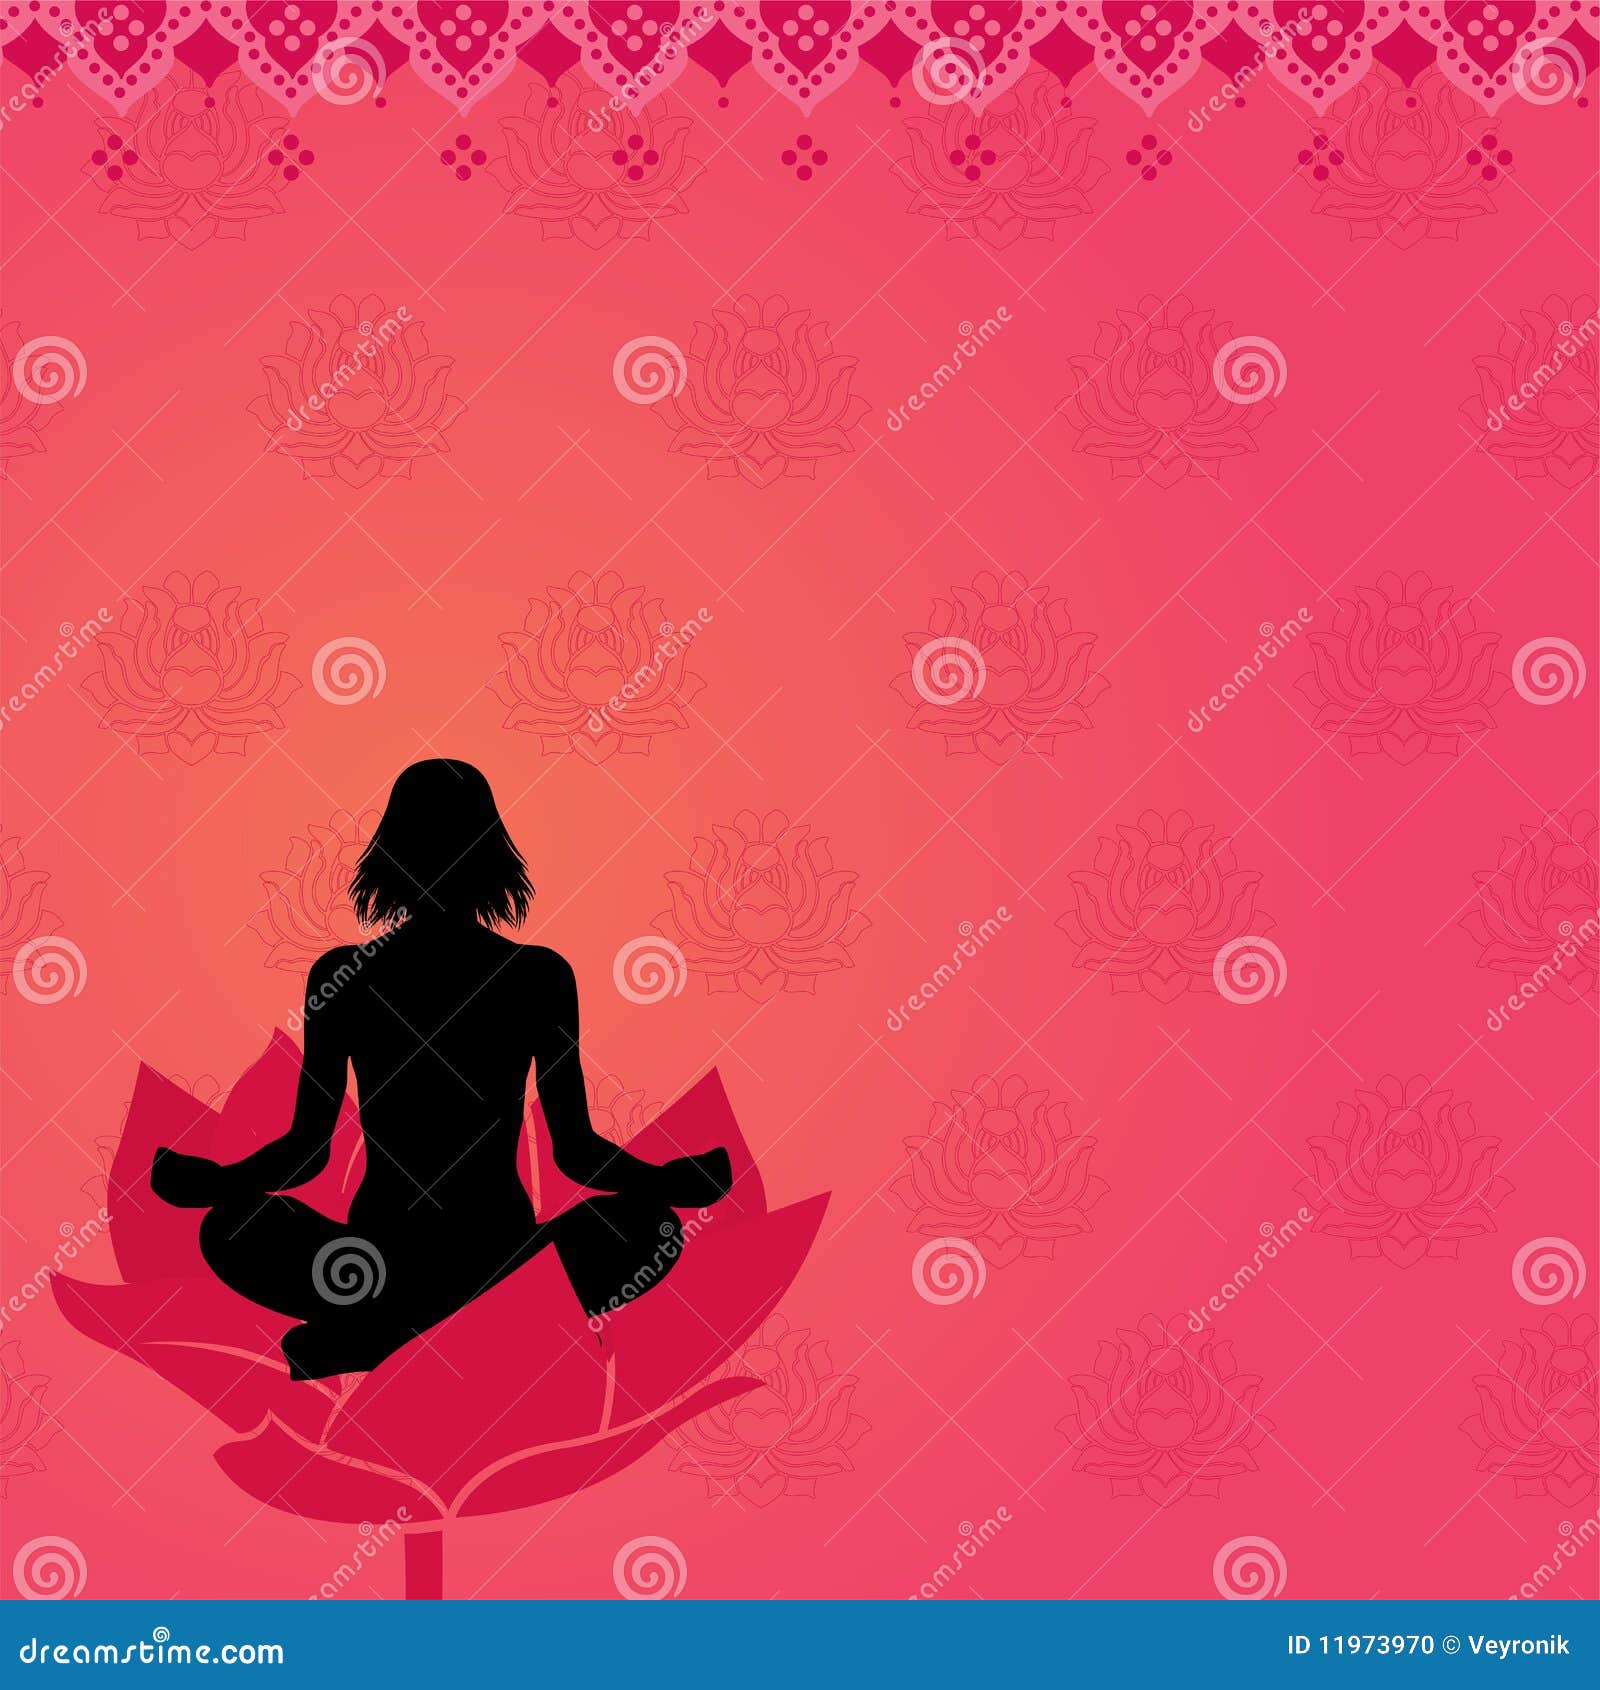 Roze yogaachtergrond. Vrouw in yoga of meditatiehouding met roze Indische stijlachtergrond